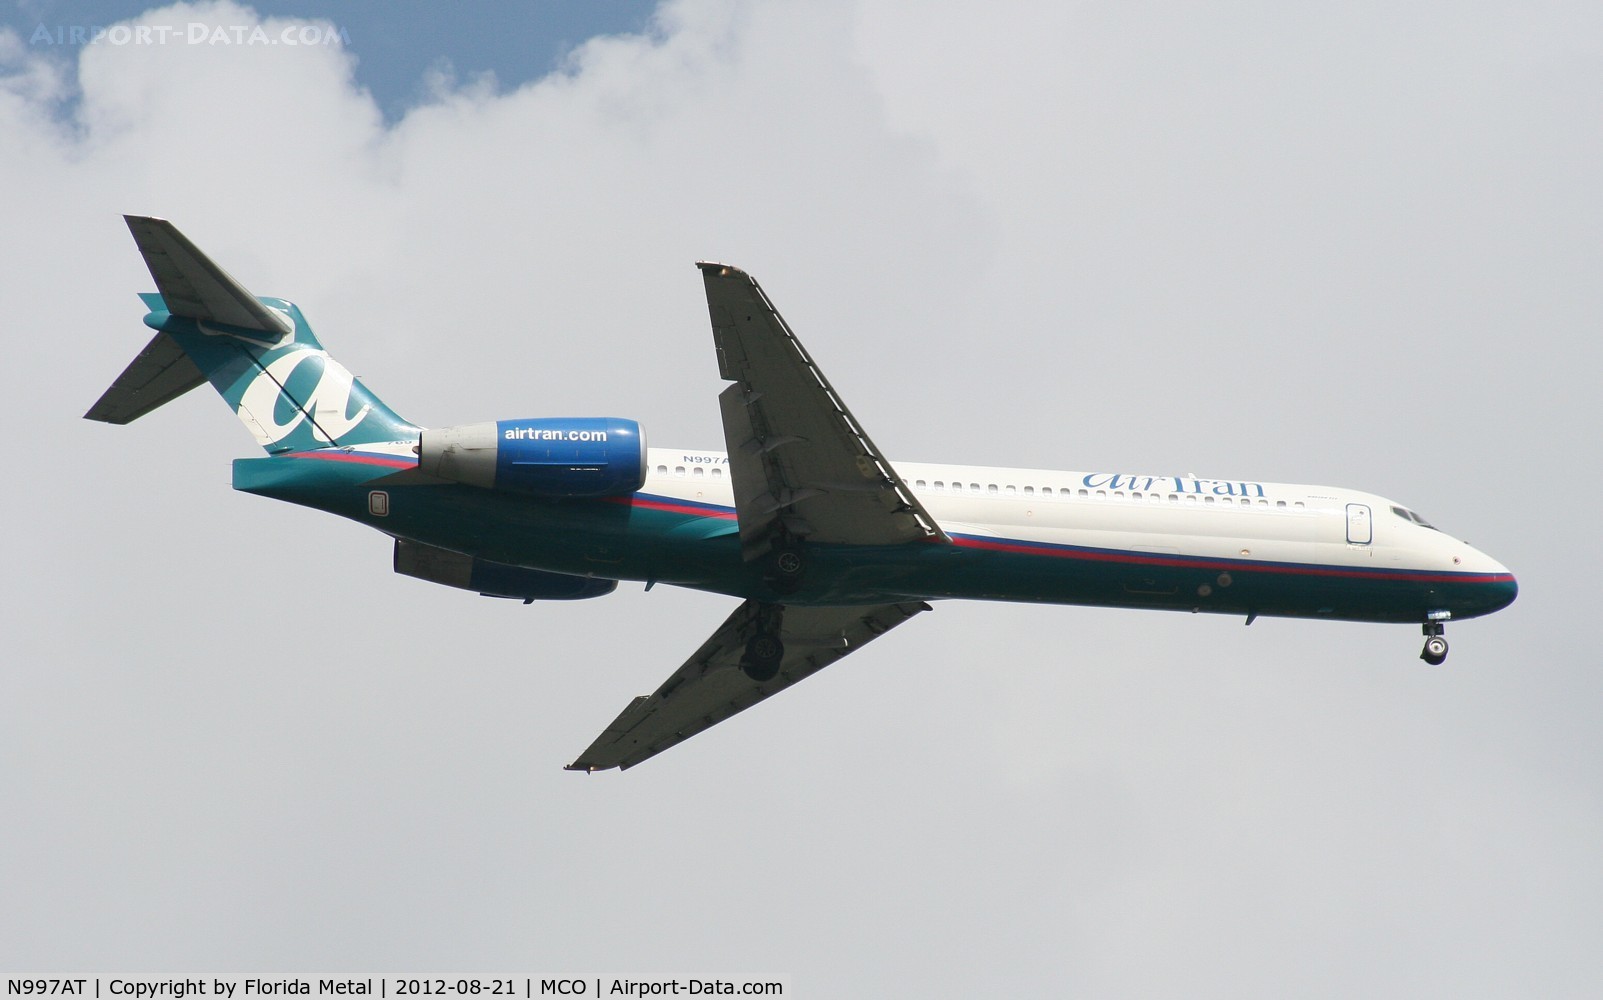 N997AT, 2002 Boeing 717-200 C/N 55141, Air Tran 717